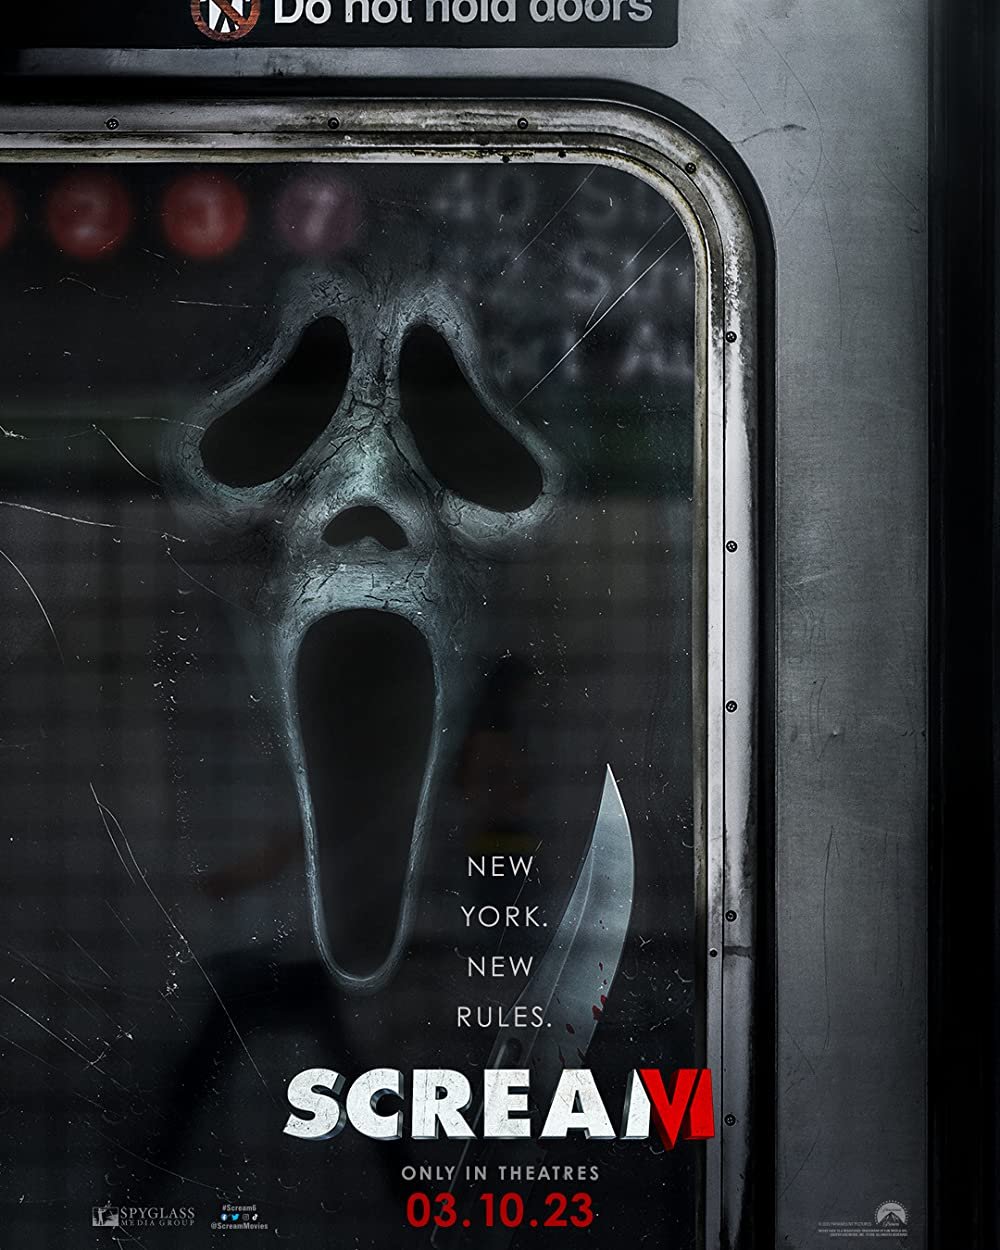 Scream images © Paramount Pictures